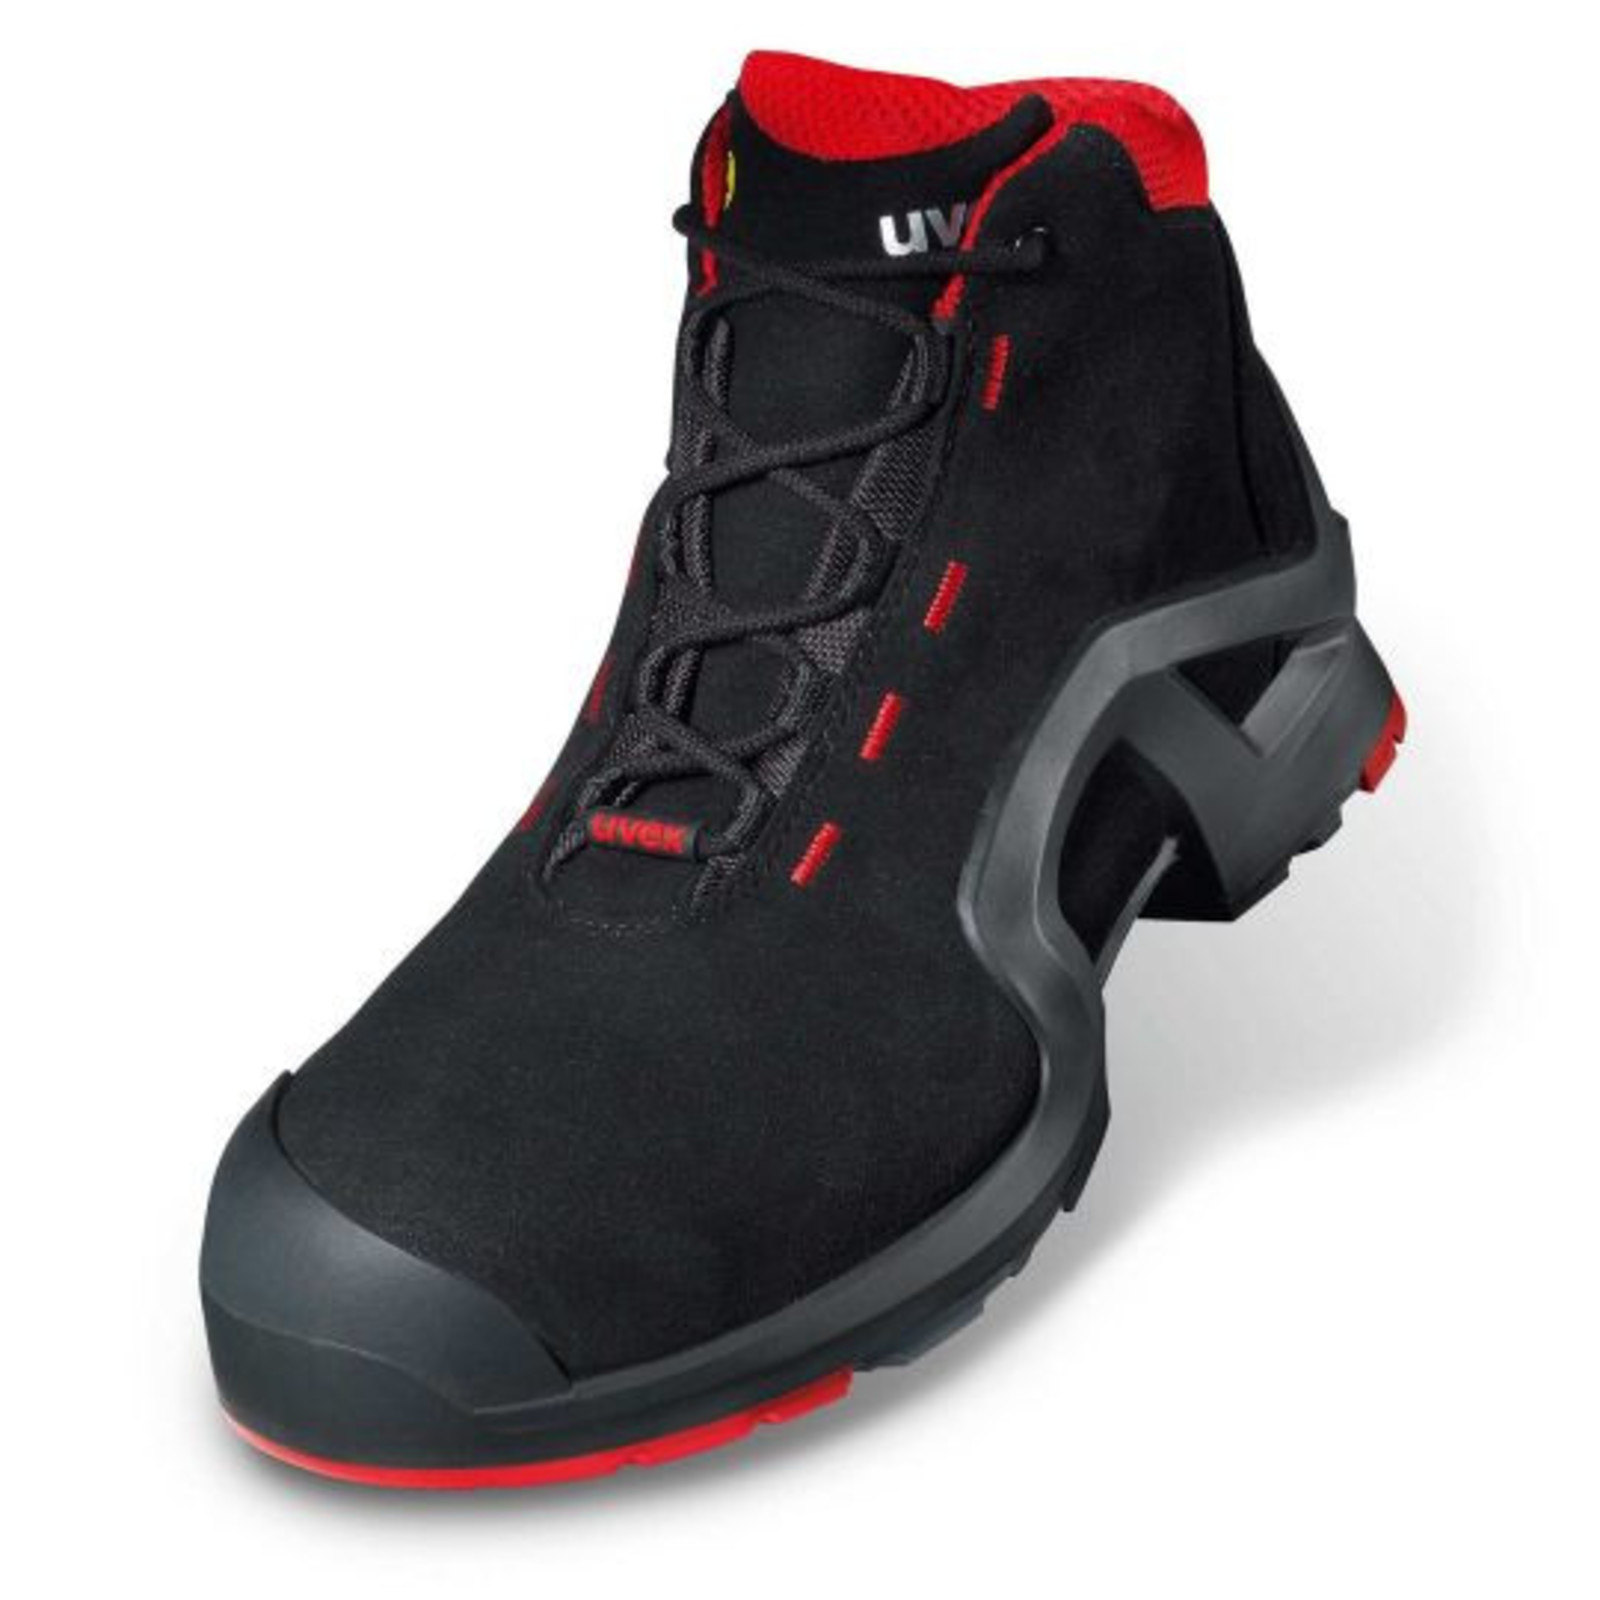 Vysoká bezpečnostná obuv Uvex 1 x-tended support S3 85172 - veľkosť: 47, farba: čierna/červená